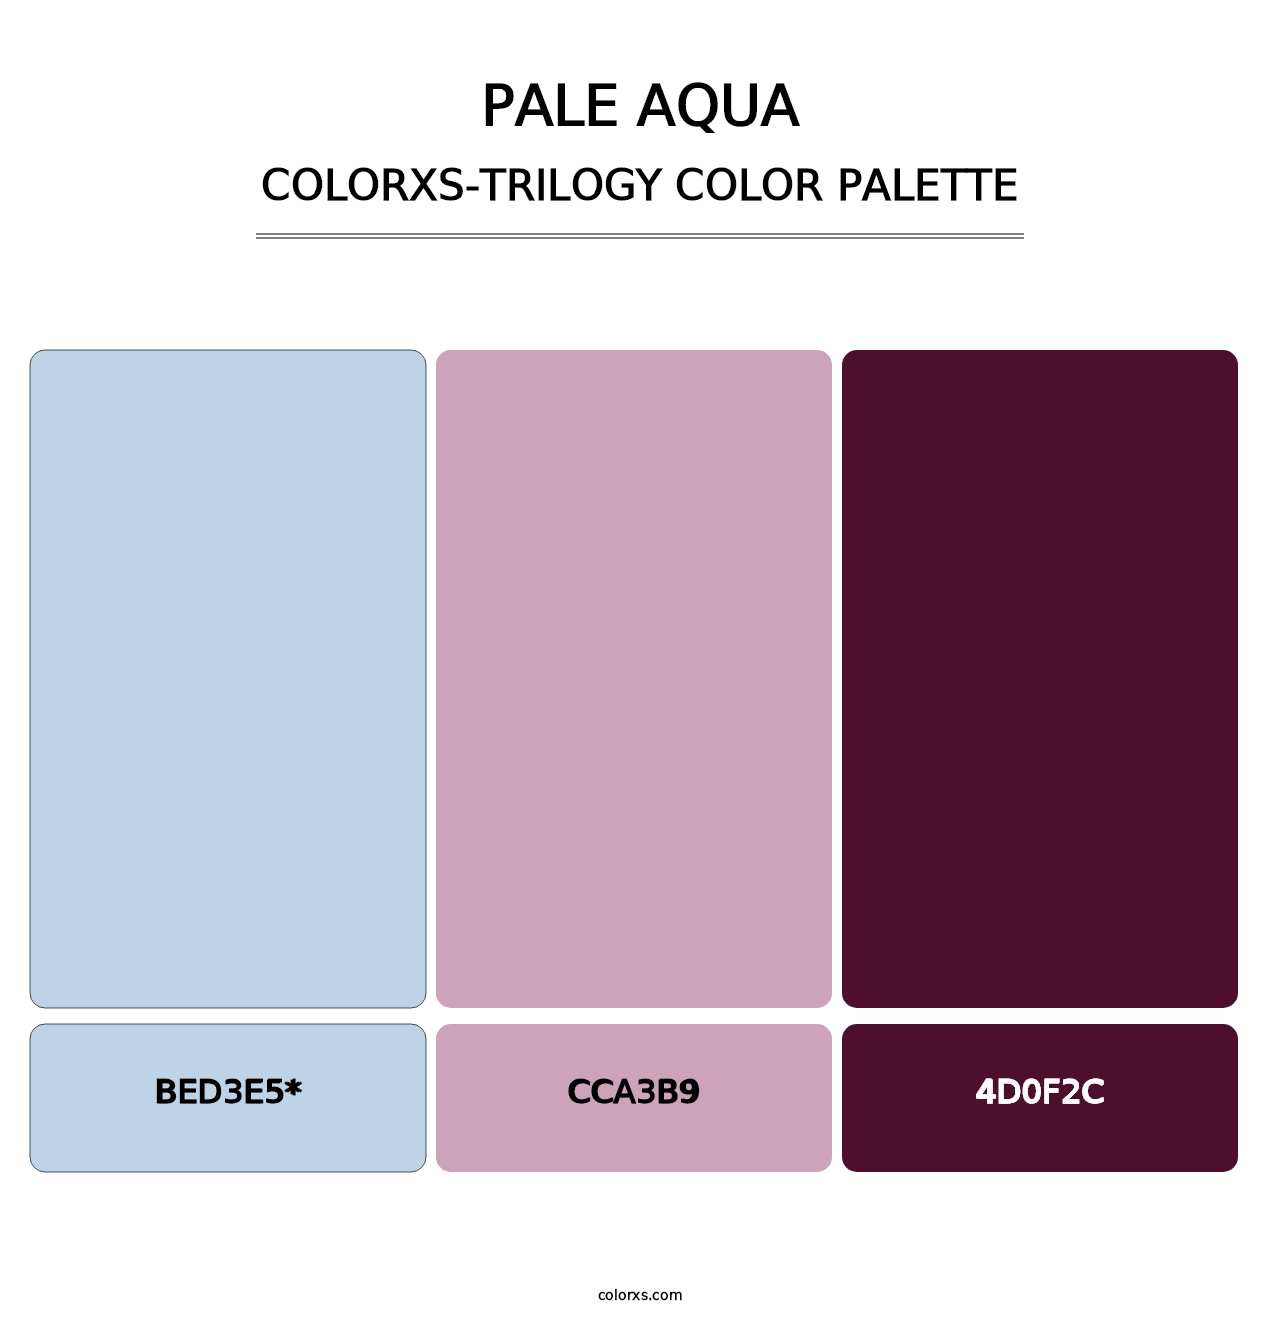 Pale Aqua - Colorxs Trilogy Palette